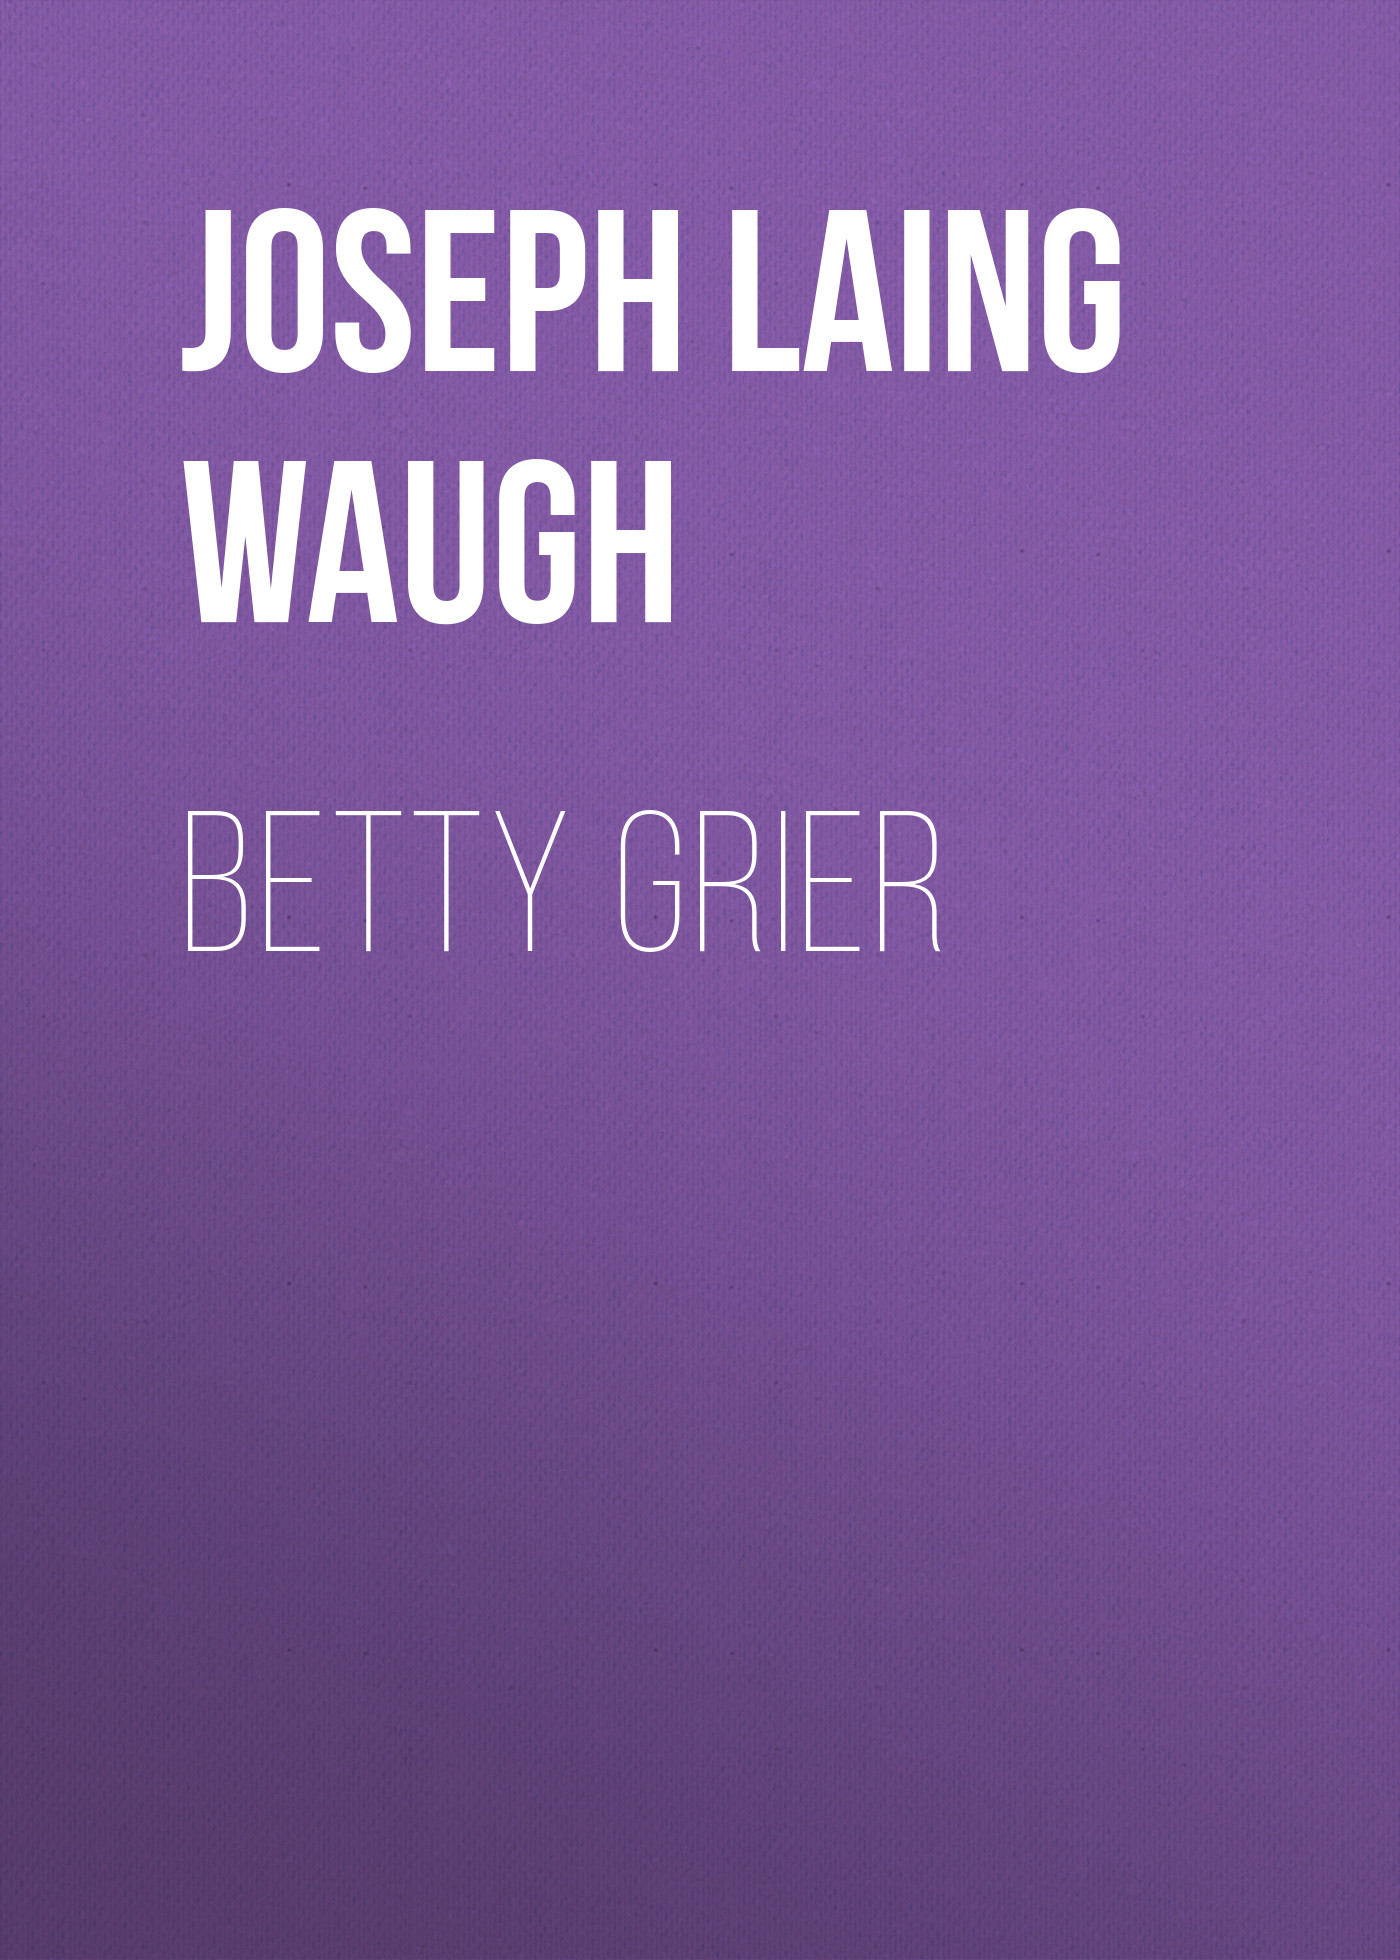 Книга Betty Grier из серии , созданная Joseph Laing Waugh, может относится к жанру Зарубежная классика, Зарубежная старинная литература. Стоимость электронной книги Betty Grier с идентификатором 34336946 составляет 0 руб.